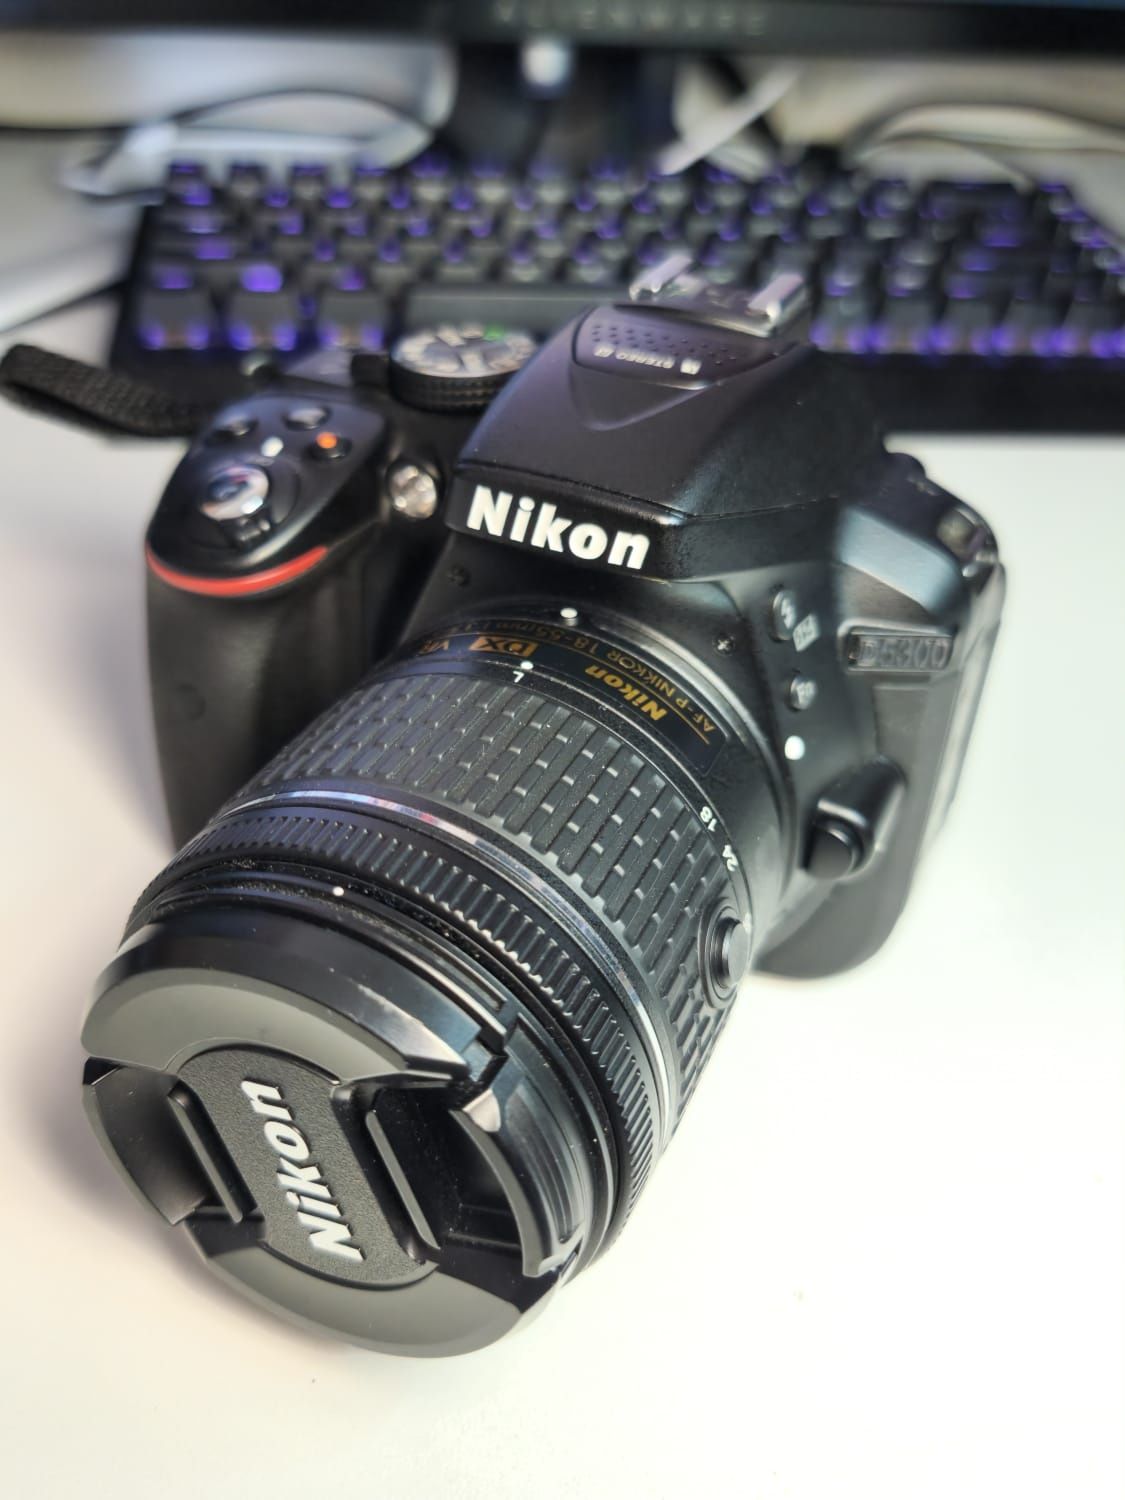 Kit Nikon d5300 și Nikon d40